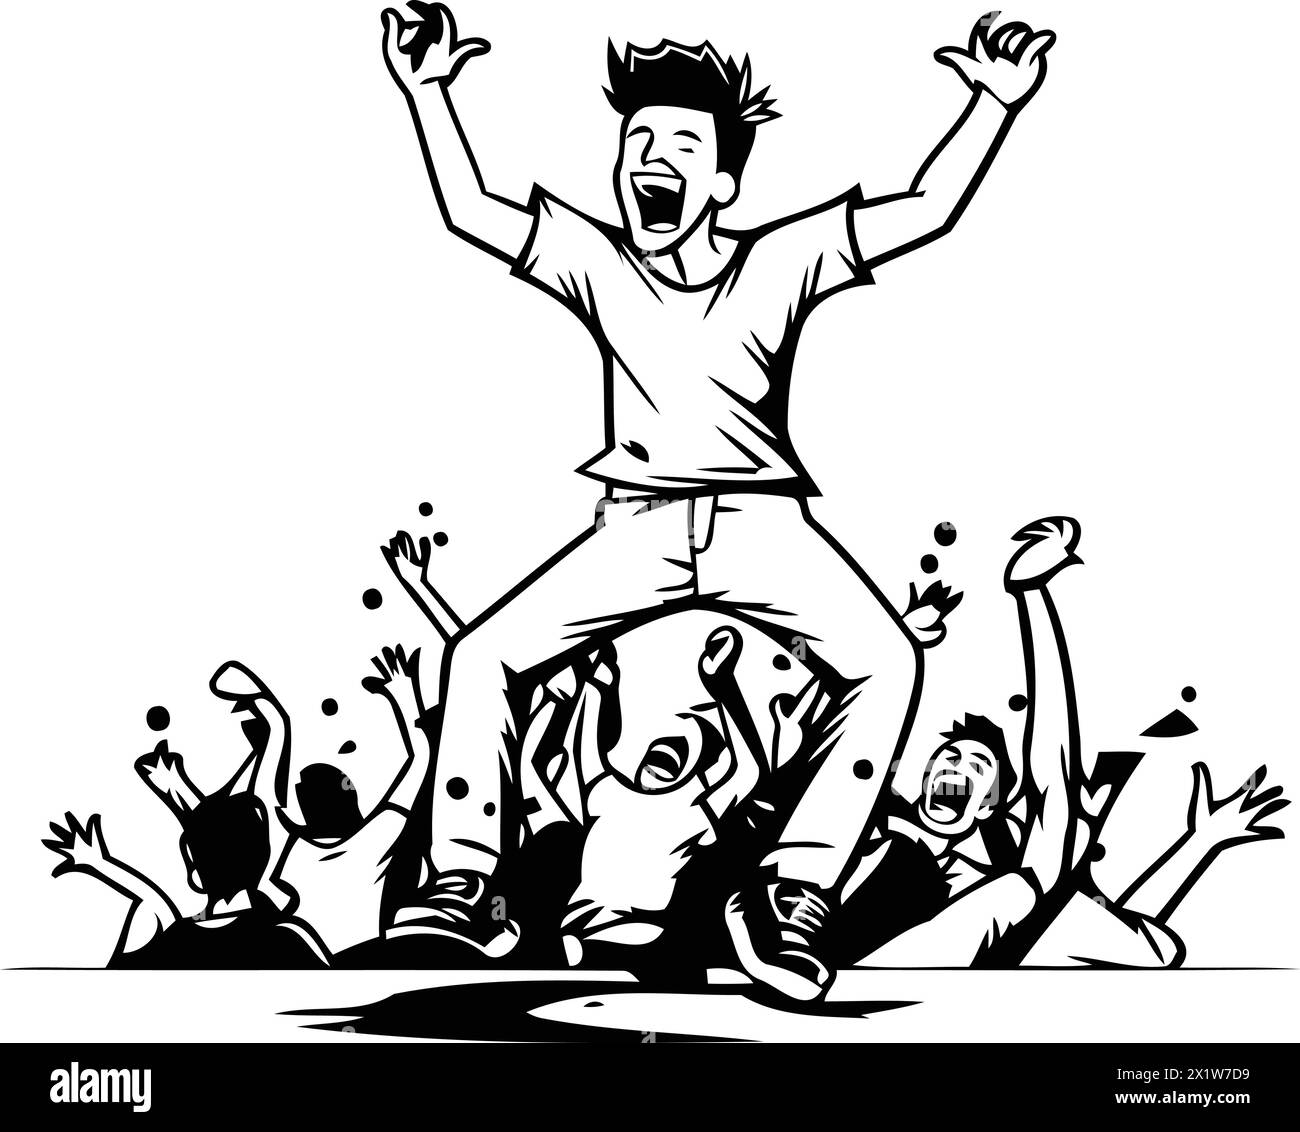 Illustrazione vettoriale di un giovane che balla e si diverte con gli amici. Illustrazione Vettoriale